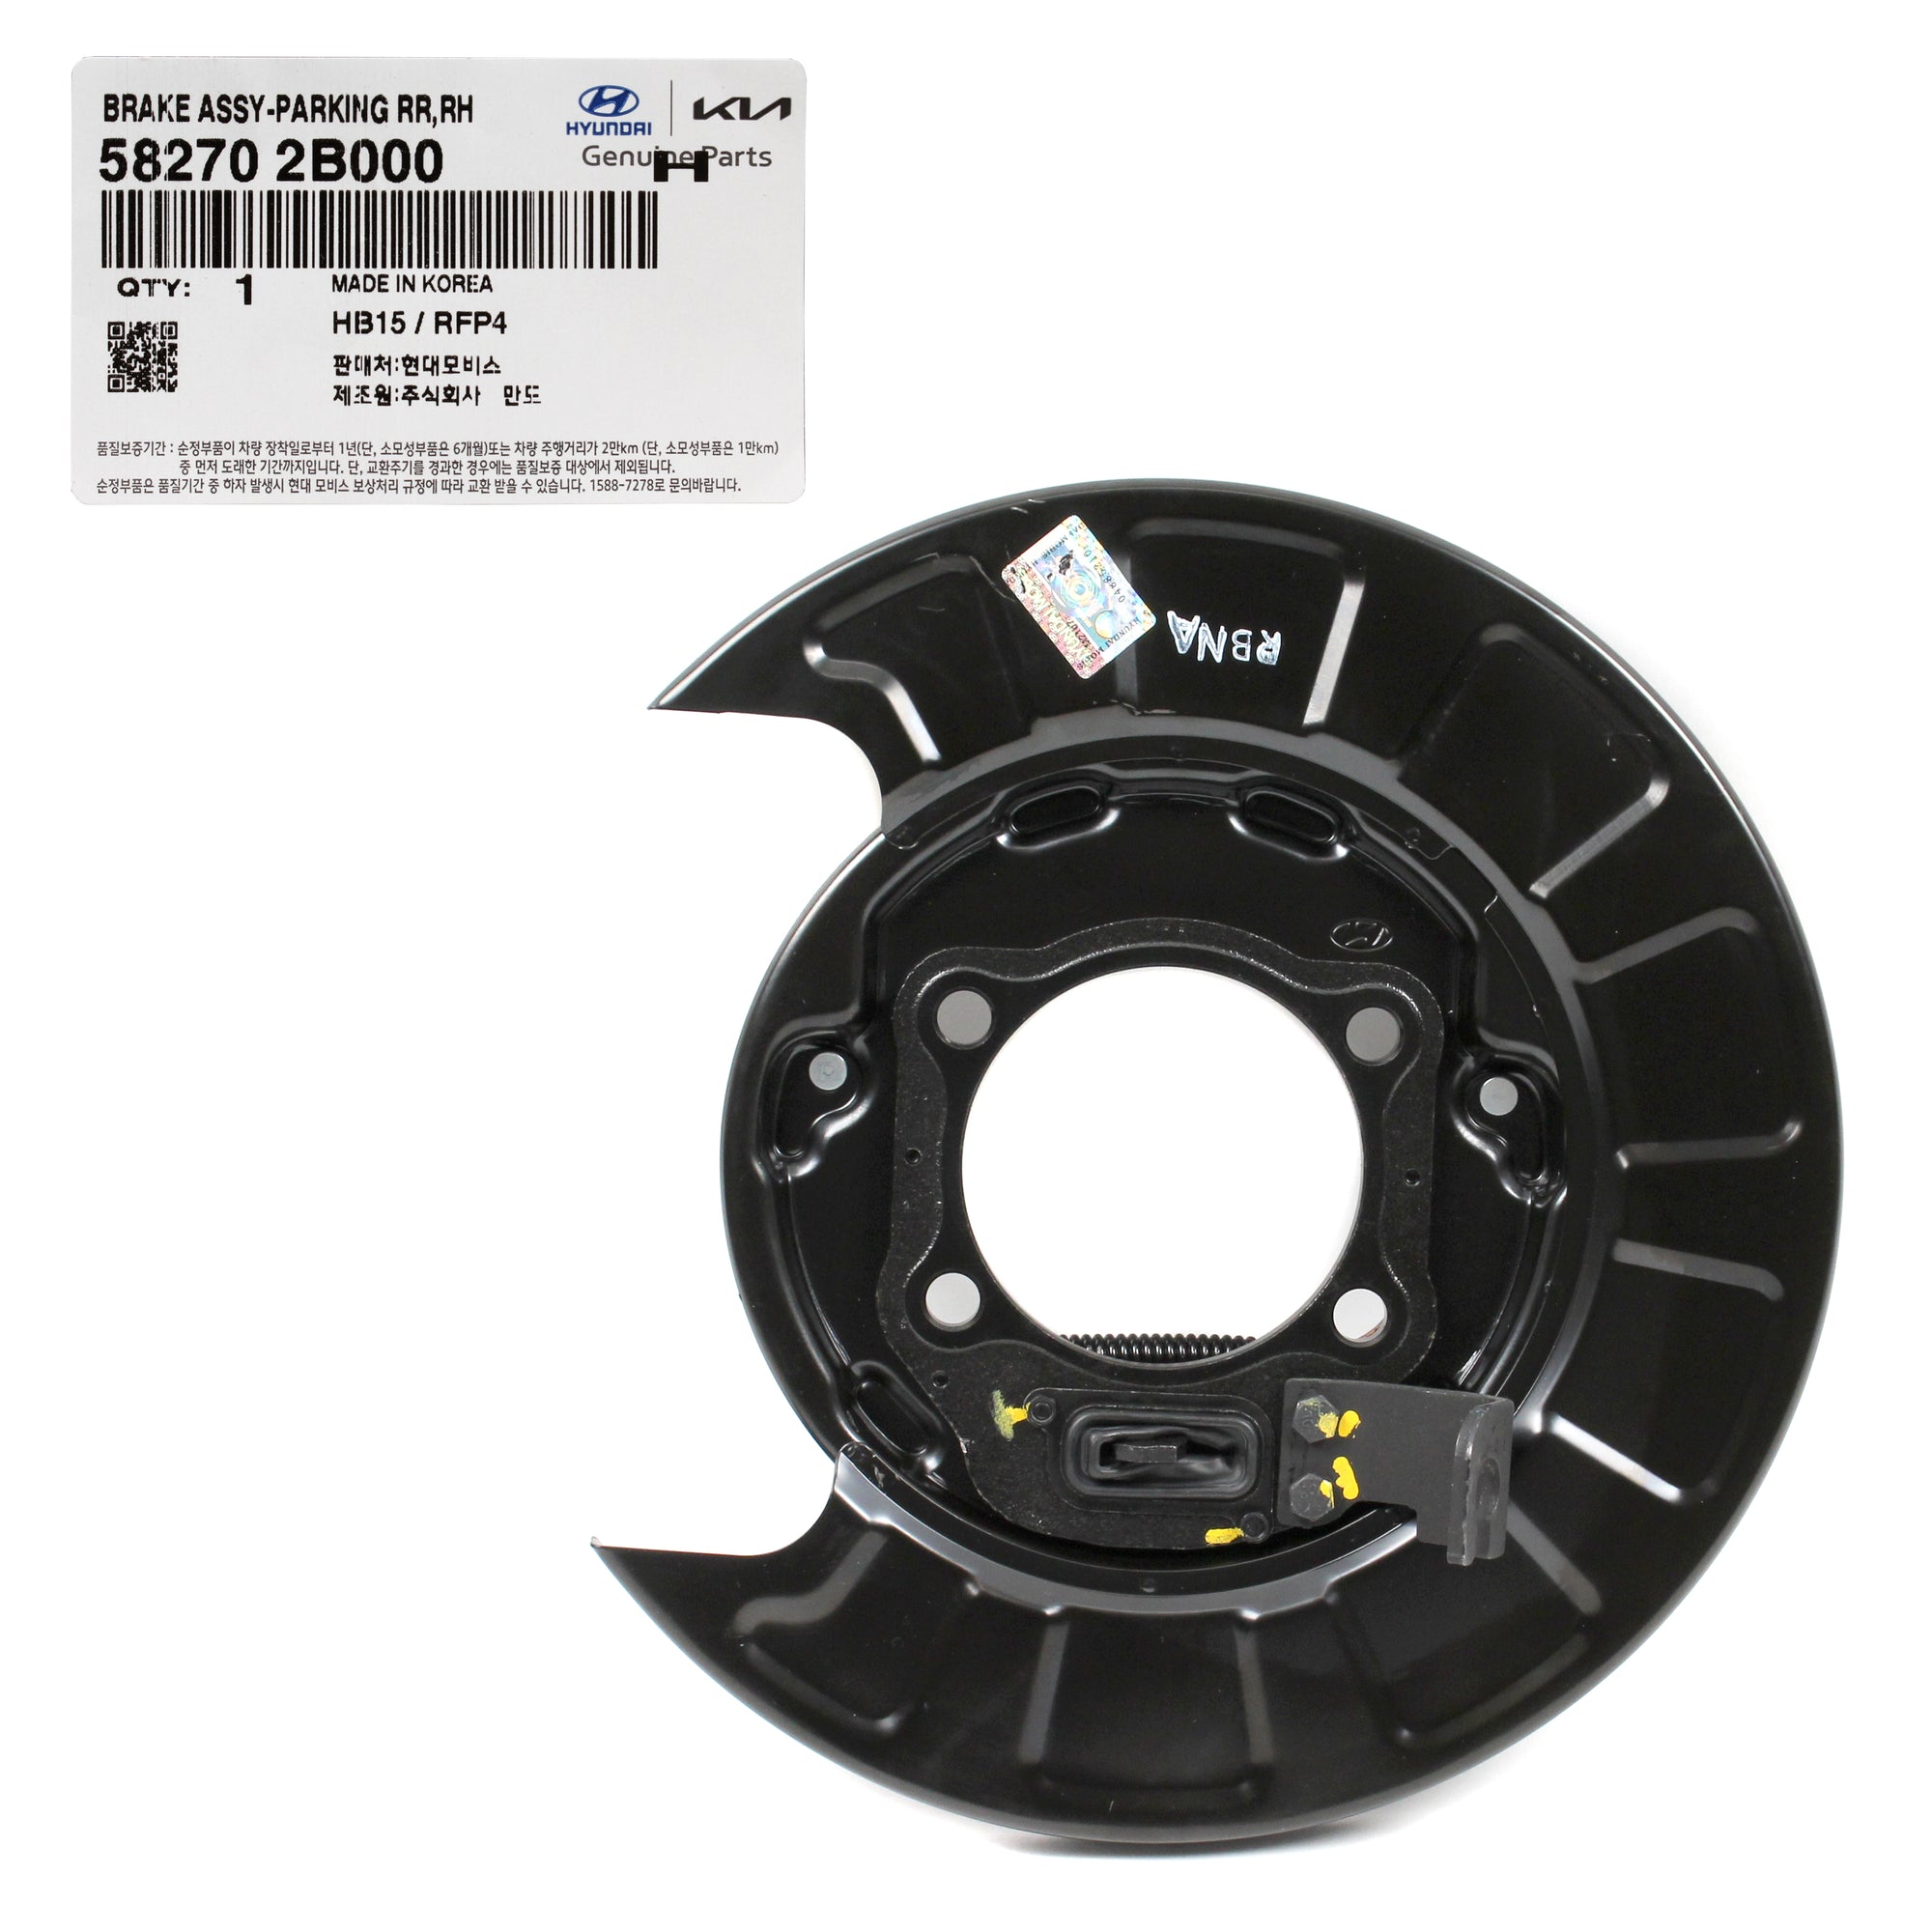 GENUINE Rear Brake Parking Plate RIGHT for 07-09 Hyundai Santa Fe 582702B000